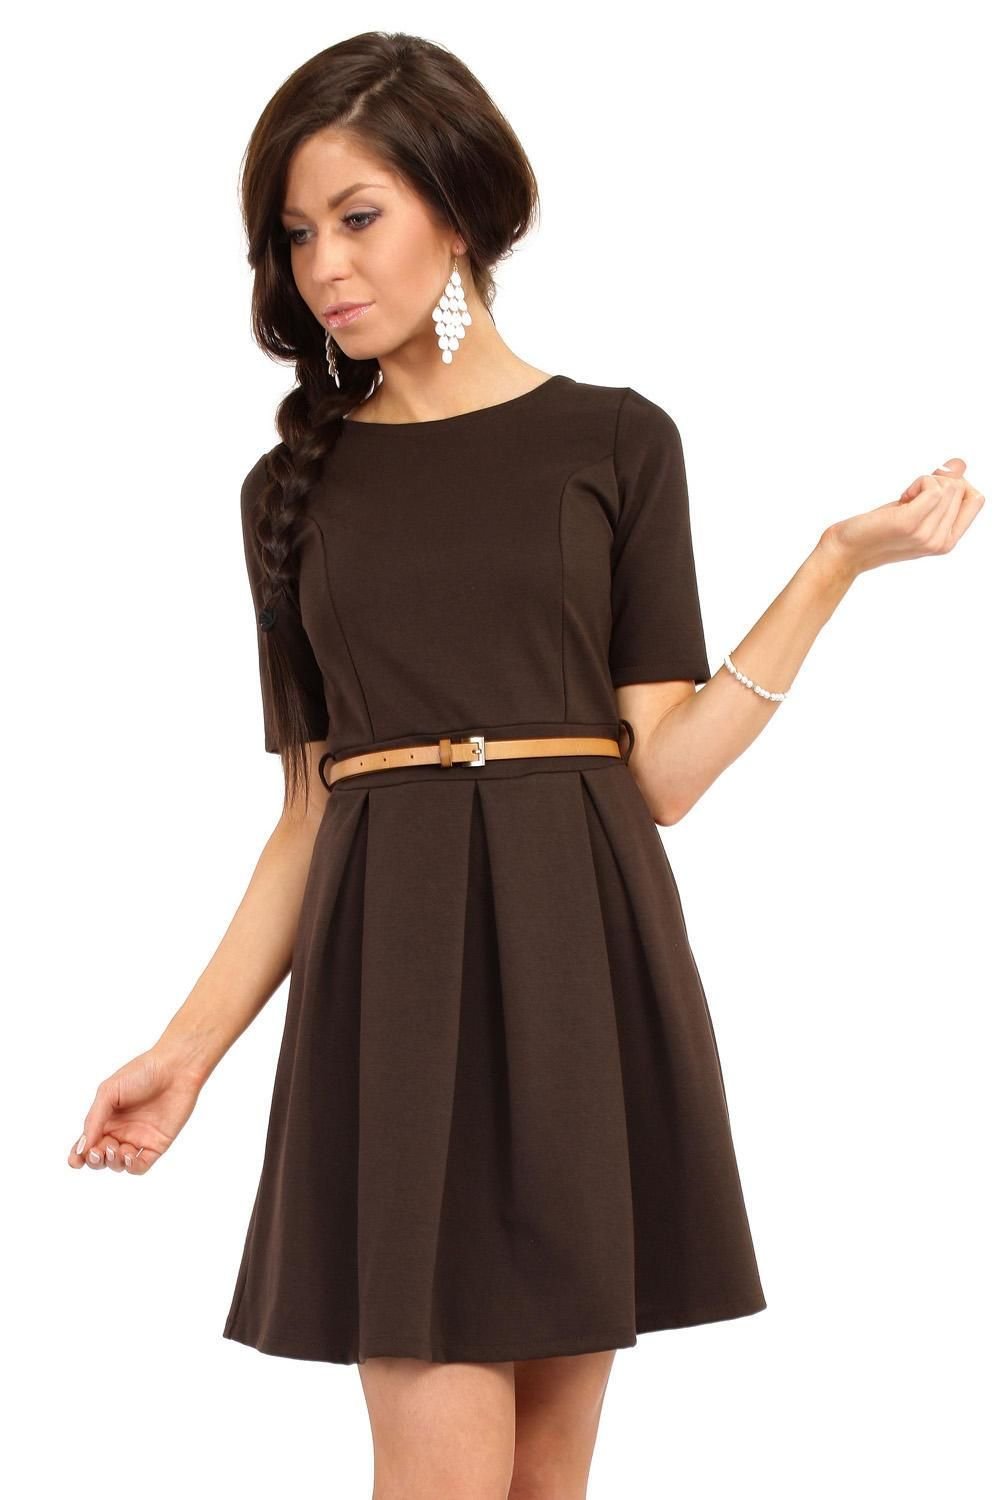 Женская коричневая платья. Платье коричневое. Платье шоколадного цвета. Платье коричневого цвета. Платье цвета шоколад.